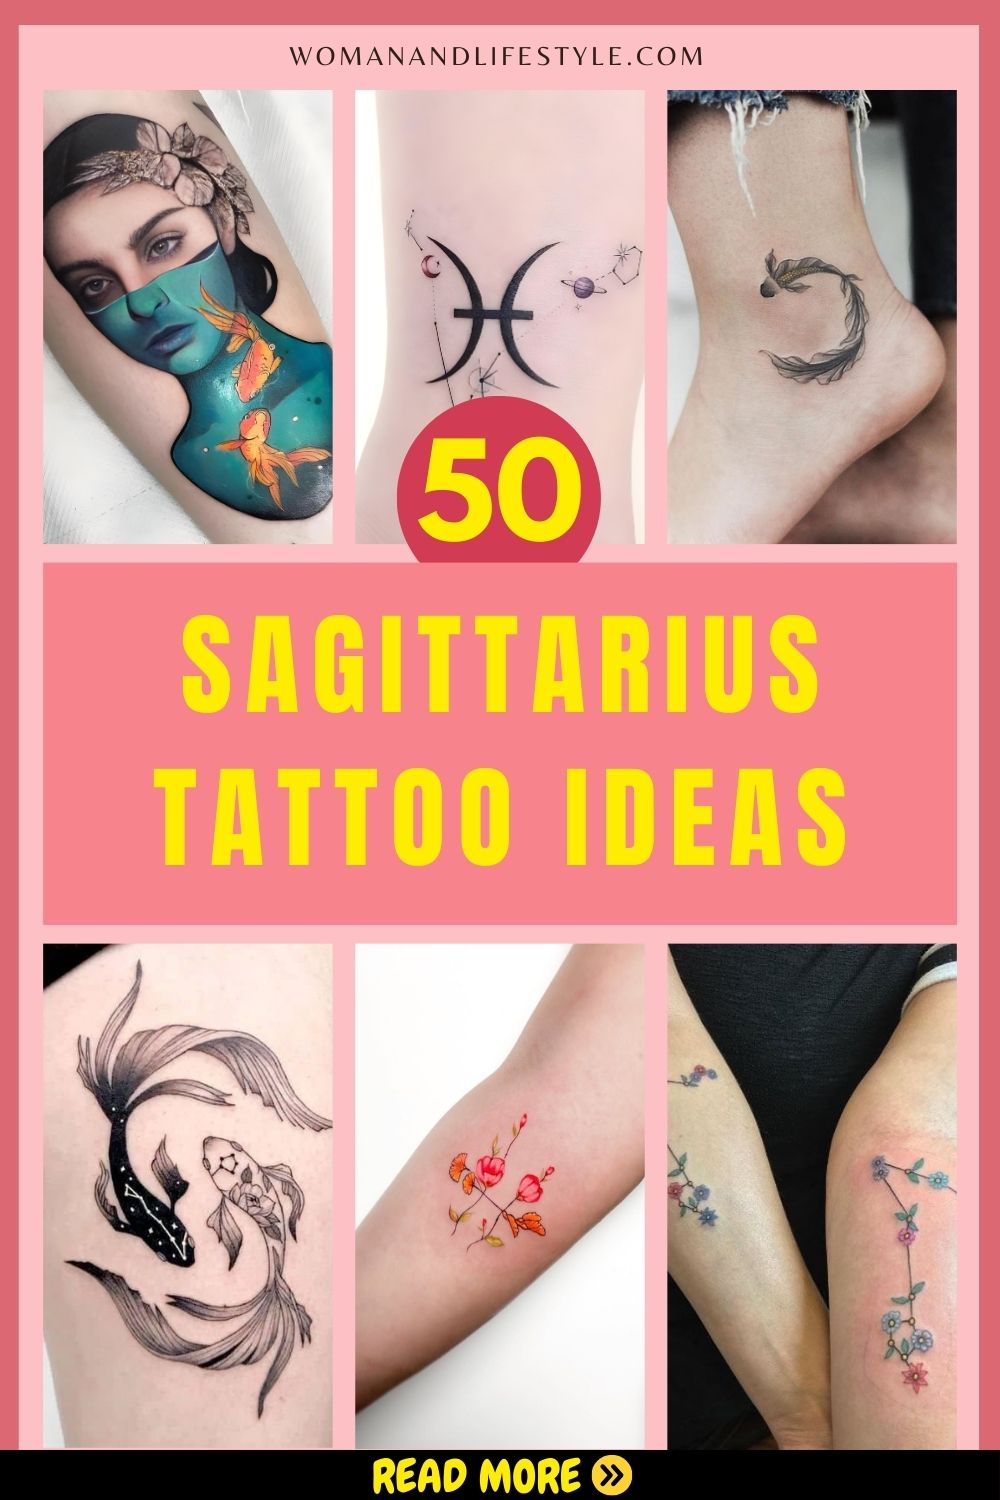 Sagittarius-Tattoo-Ideas-Pin